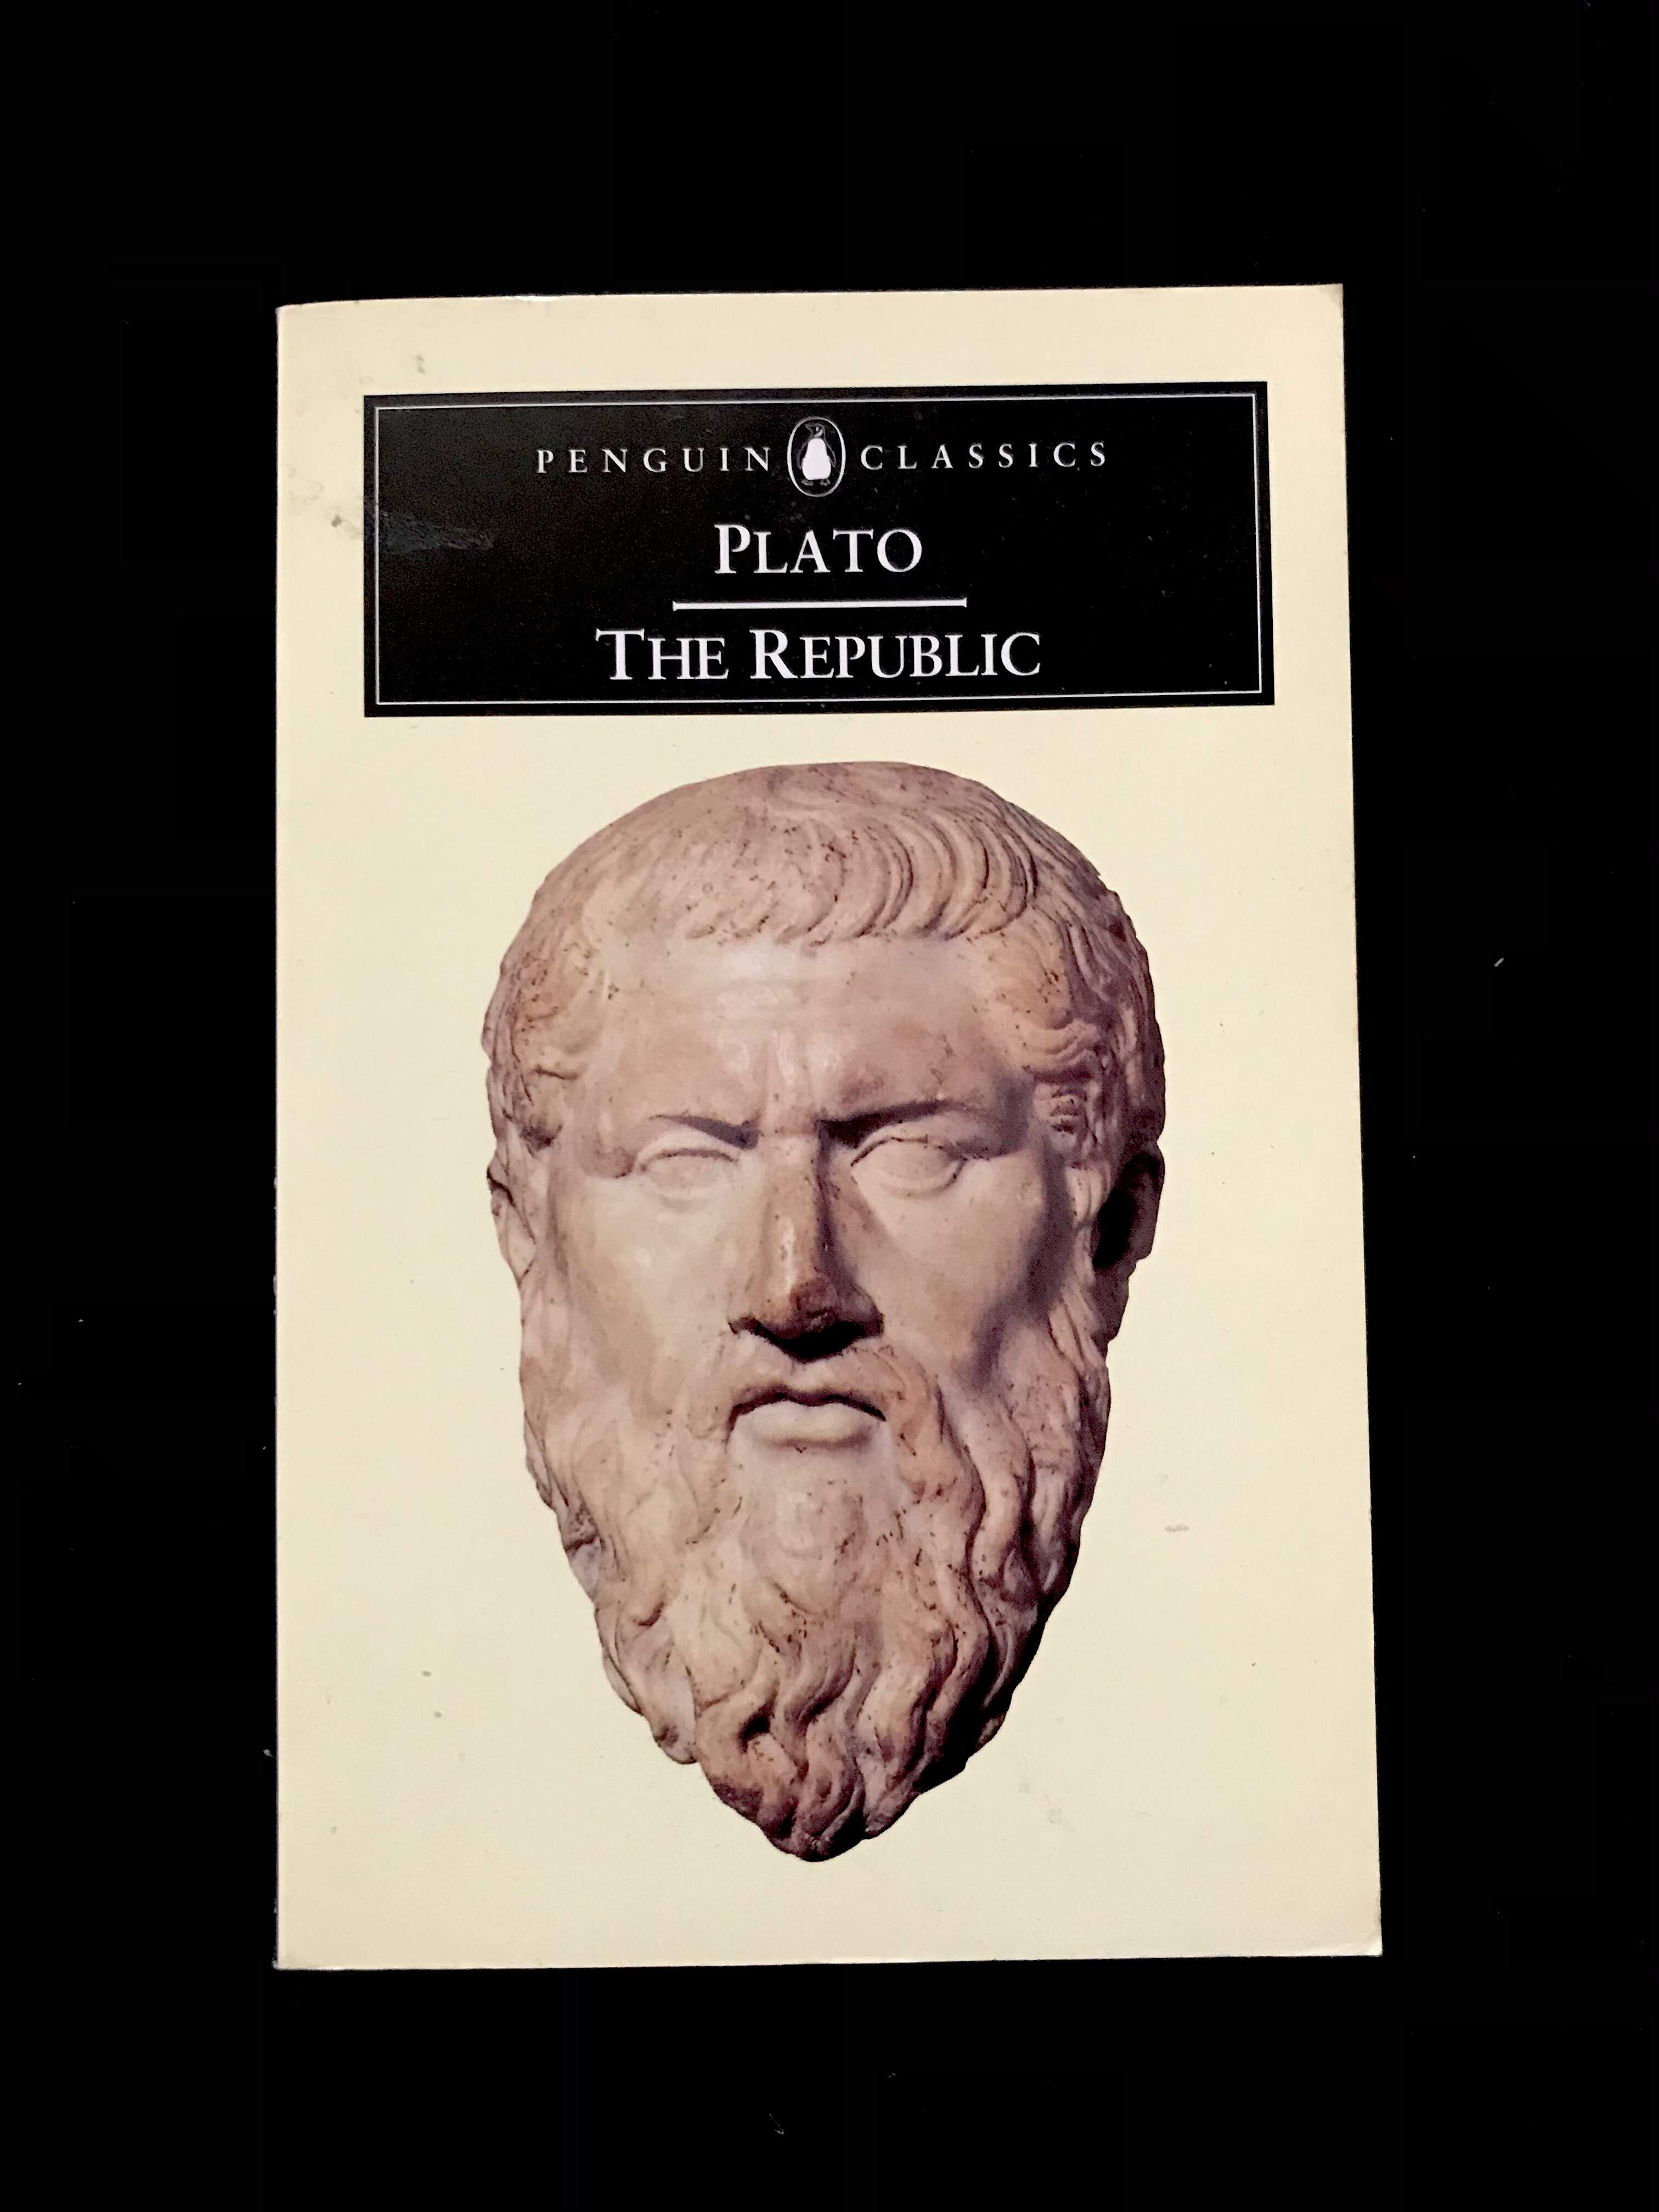 The Republic by Plato